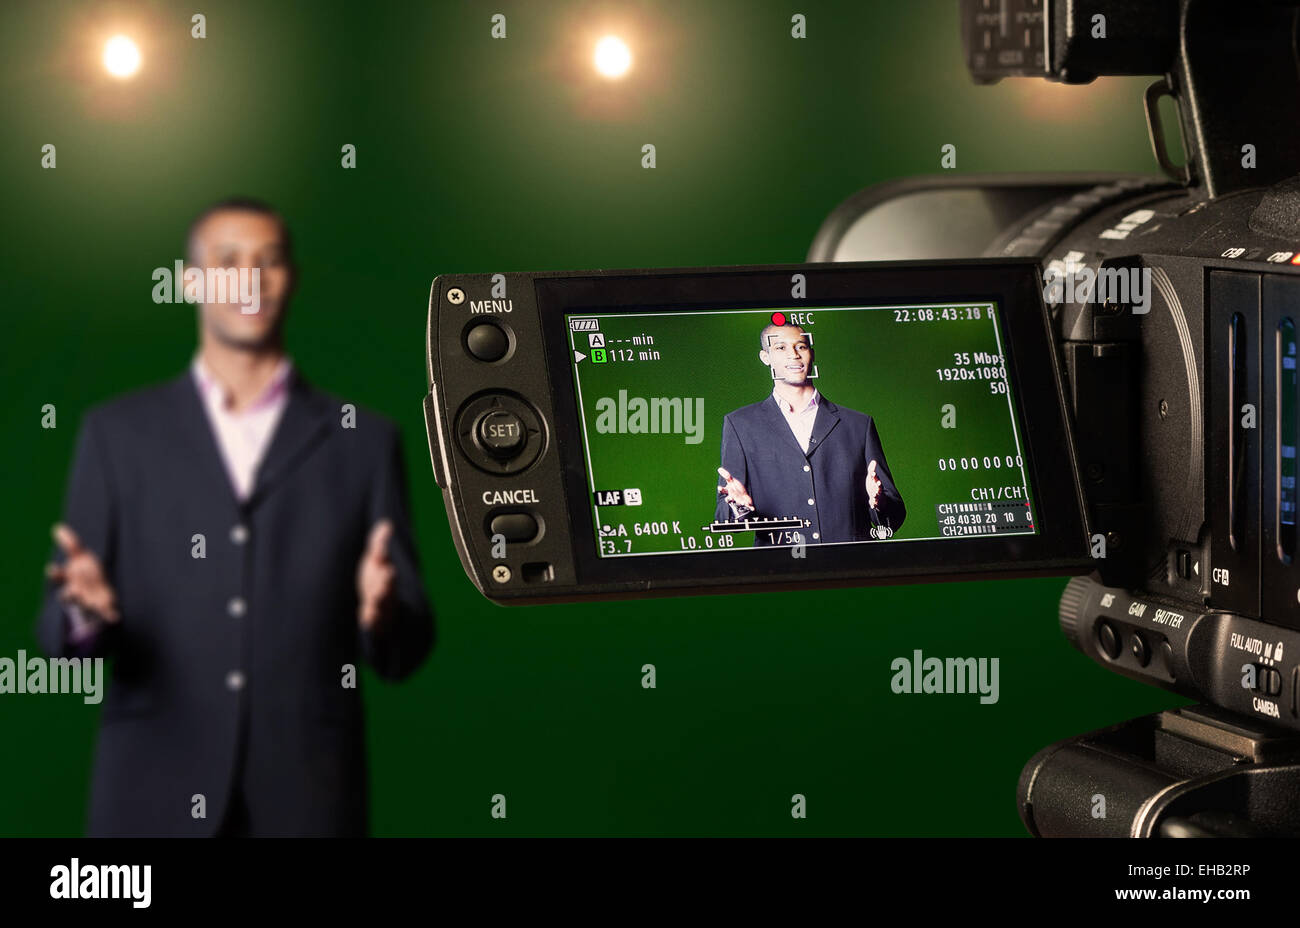 Présentateur de télévision dans un studio de télévision écran vert, vu à travers l'écran LCD d'un appareil photo numérique. Focus sélectif. Banque D'Images